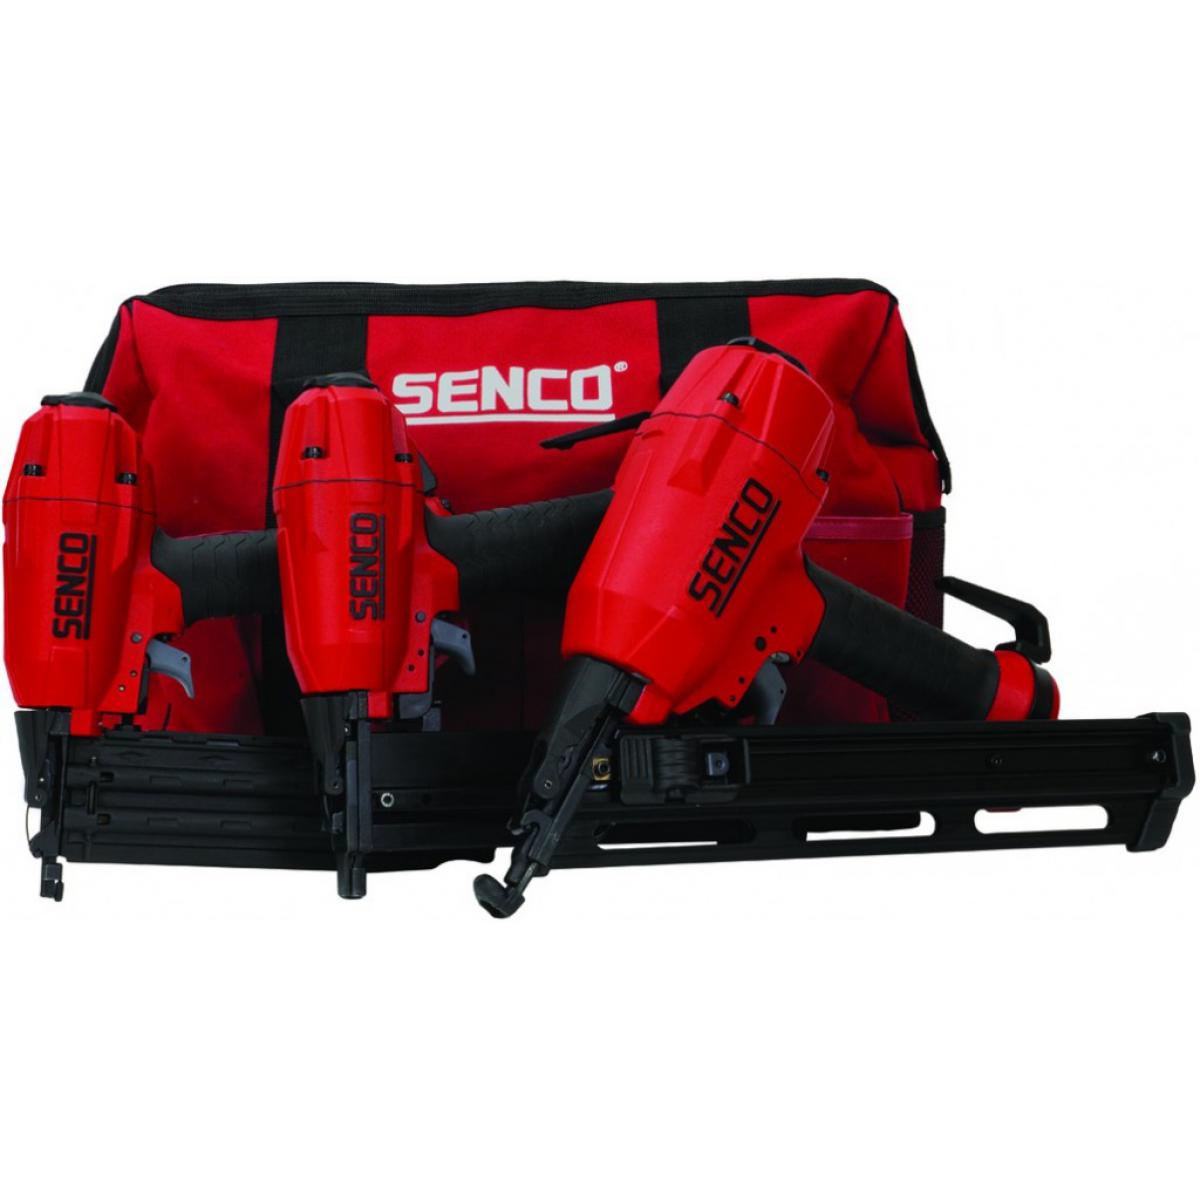 Senco - Kit 3 outils Black Label SENCO - 2 cloueurs + agrafeuse + sac de transport - 10S2001N - Packs d'outillage électroportatif